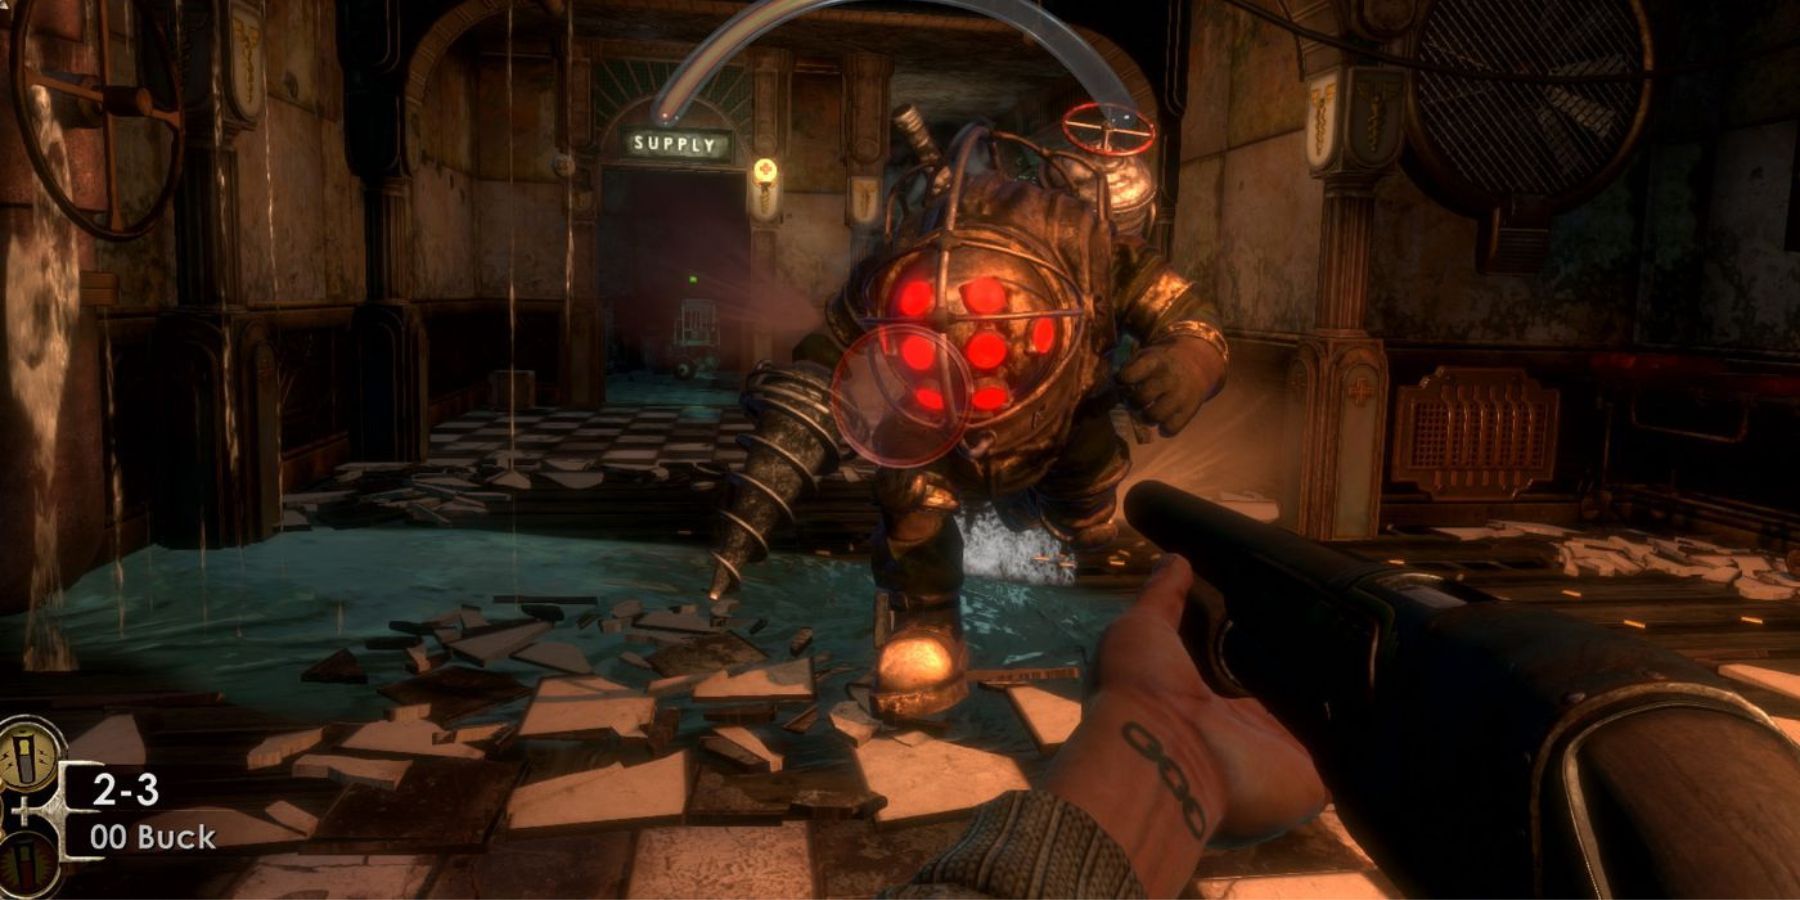 Shooting an enemy in BioShock